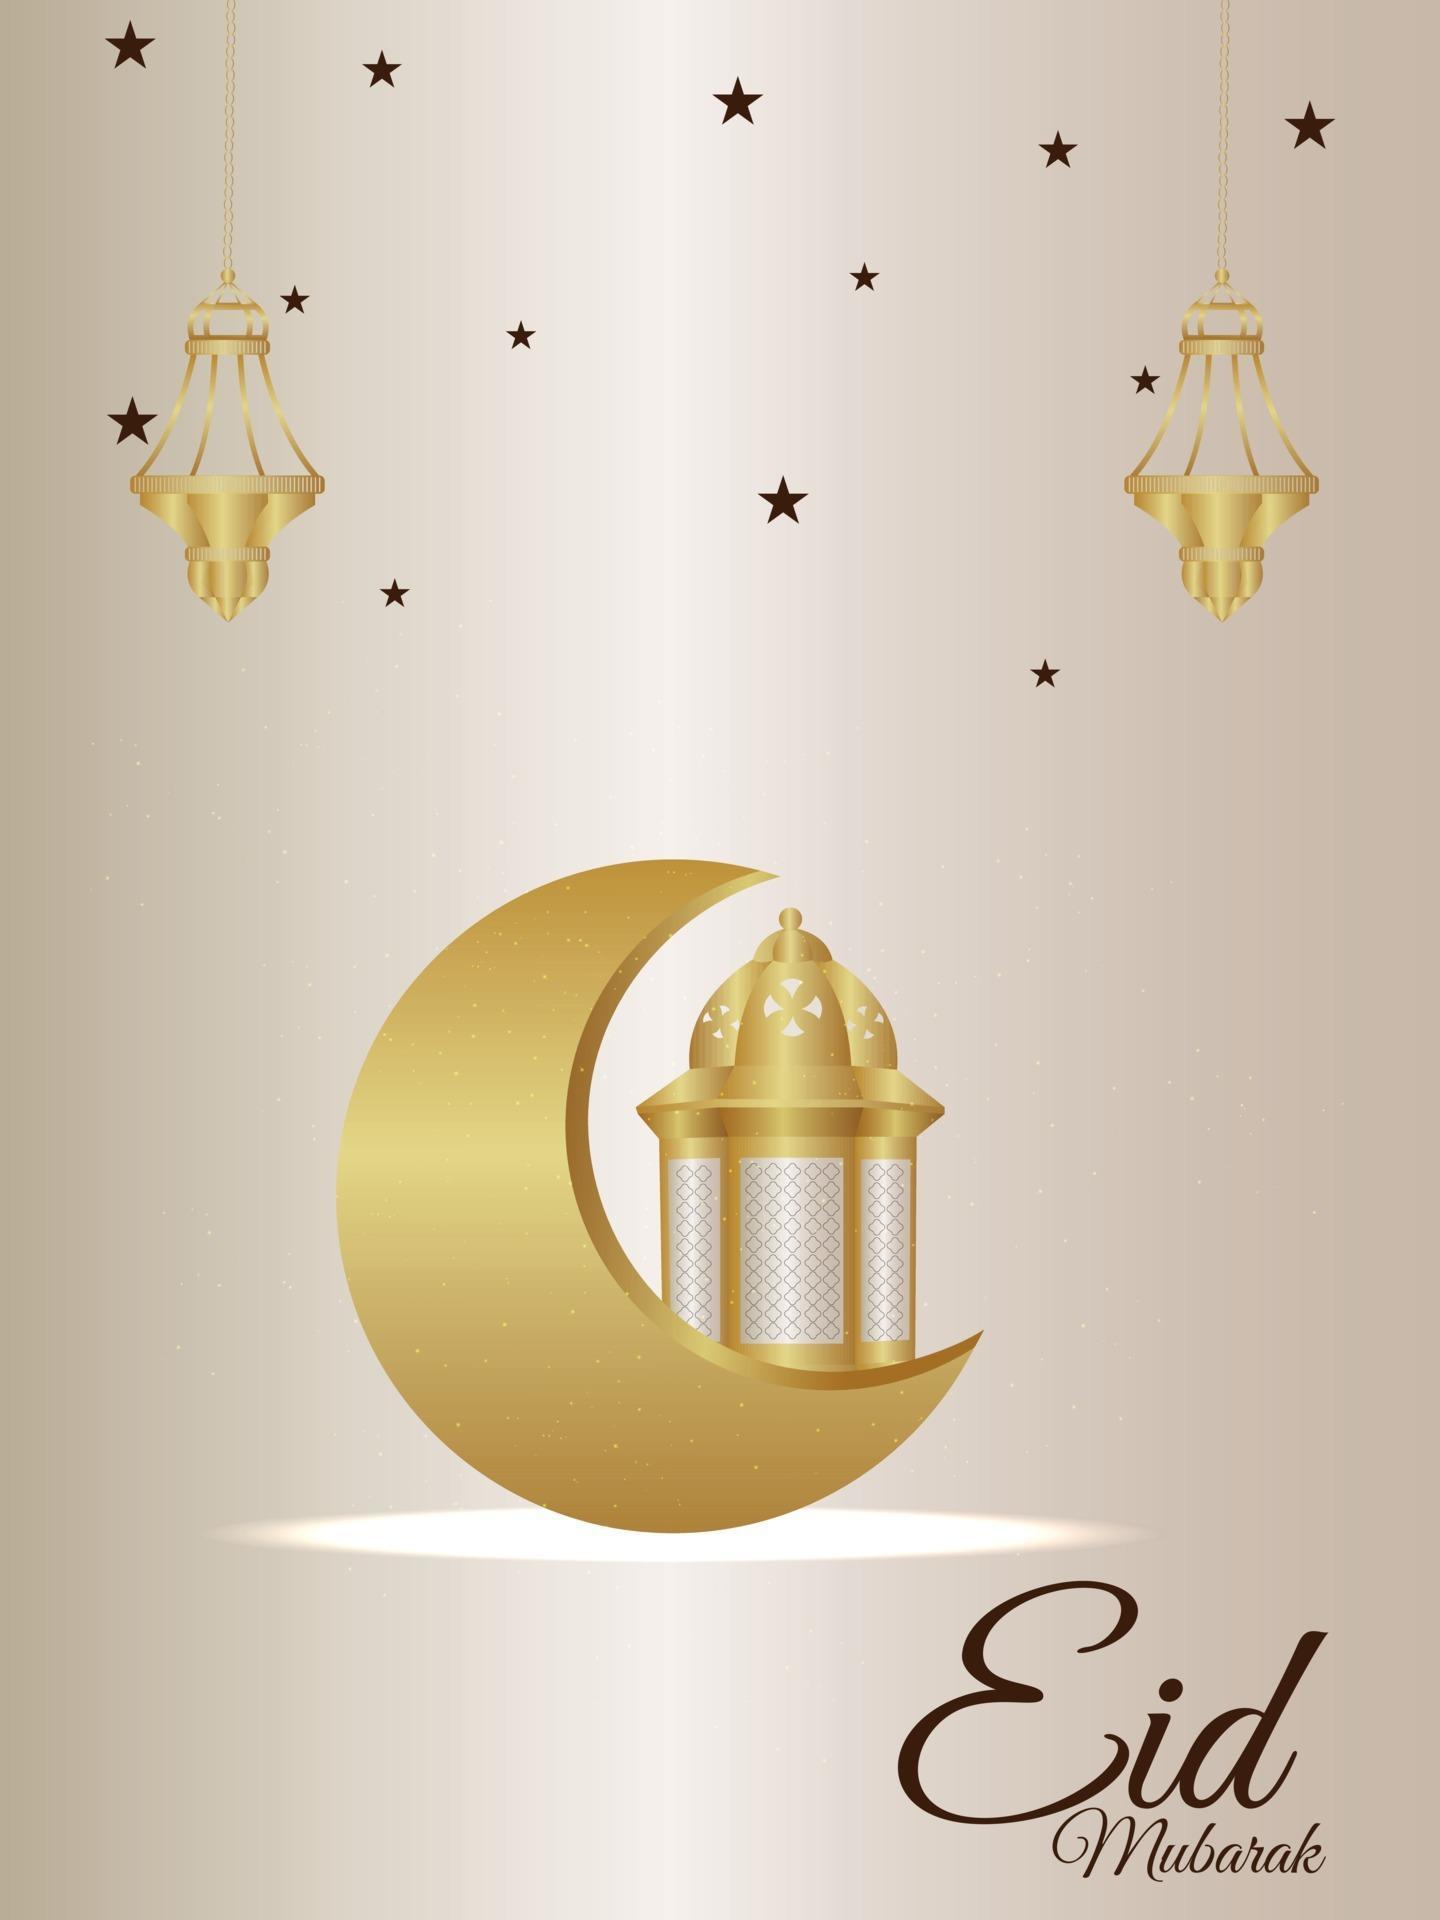 flyer de fête de célébration eid mubarak avec lune dorée créative et